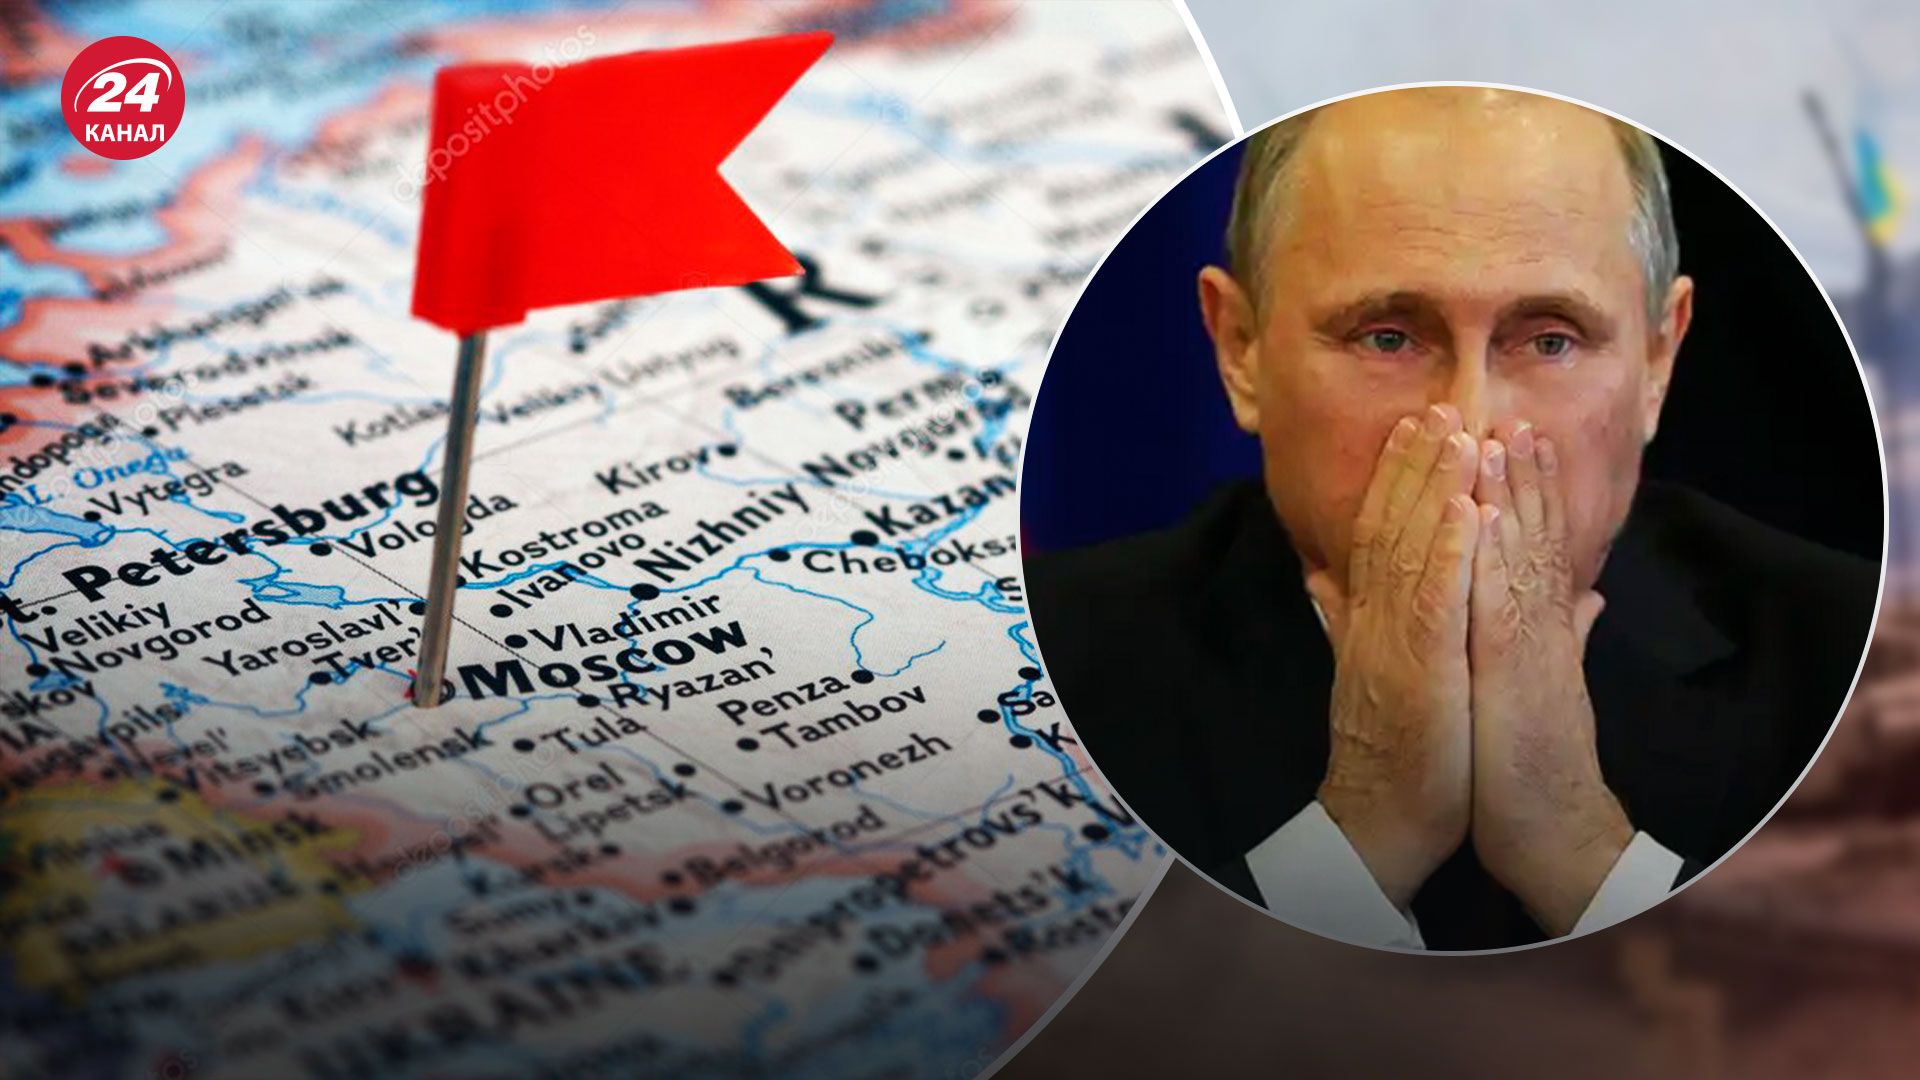 Развал России - лидер Чечни прогнозирует распад России в ближайшее время - 24 Канал